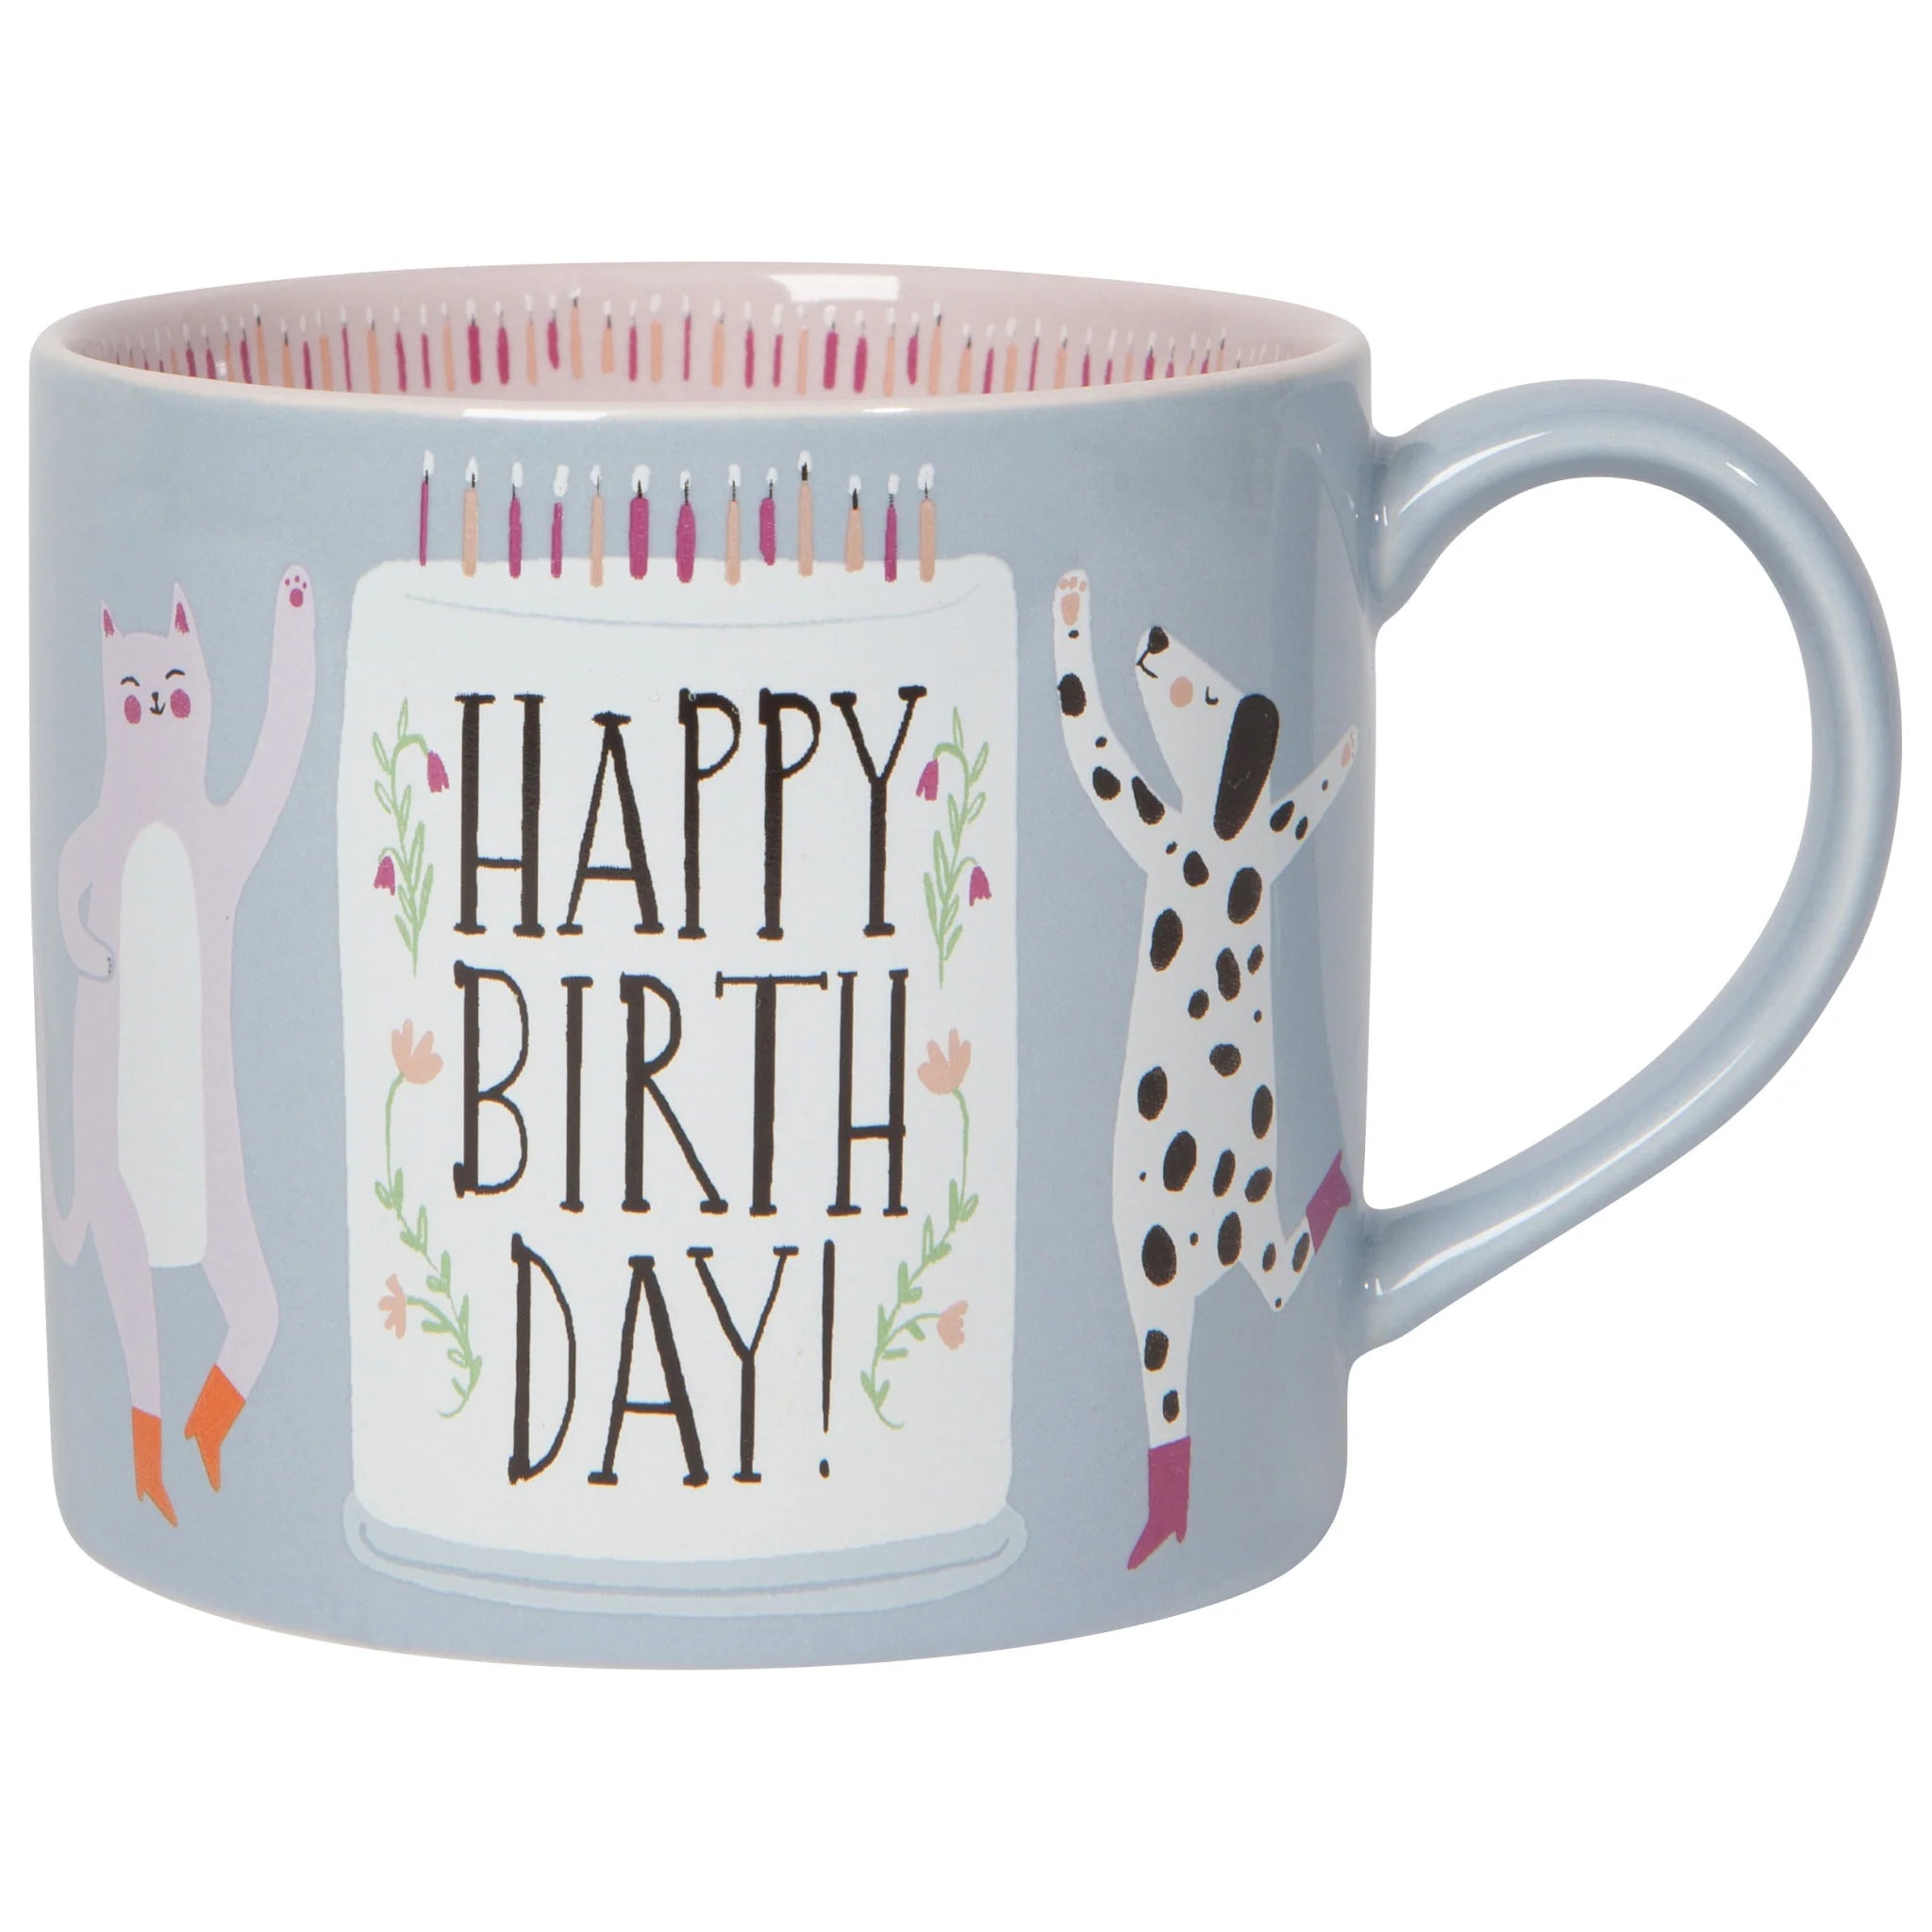 Mug In A Box: Happy Birthday